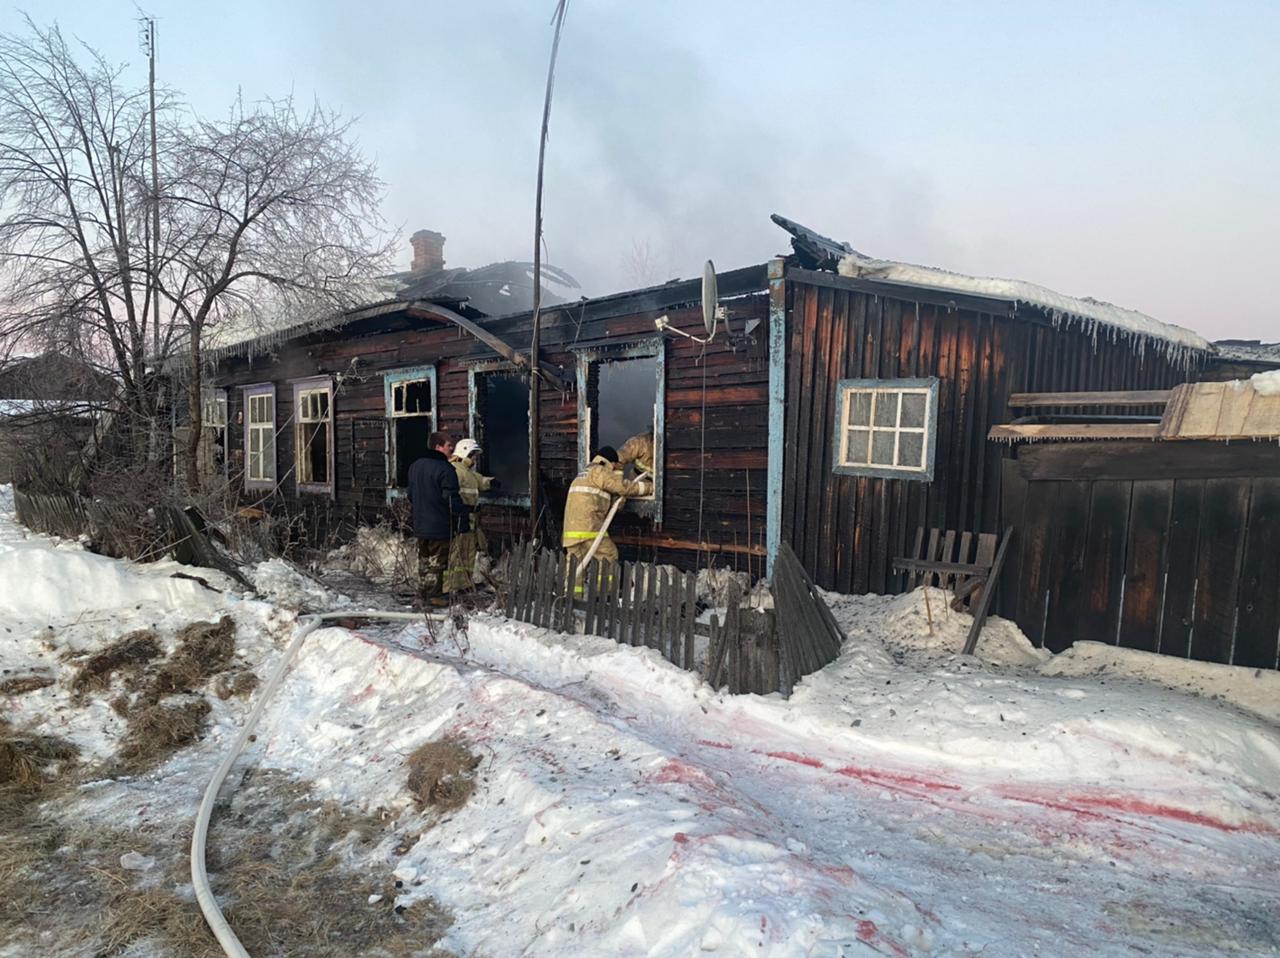 При тушении пожара в Ларьковке обнаружены тела бабушки и внучки. Следственный комитет проводит проверку